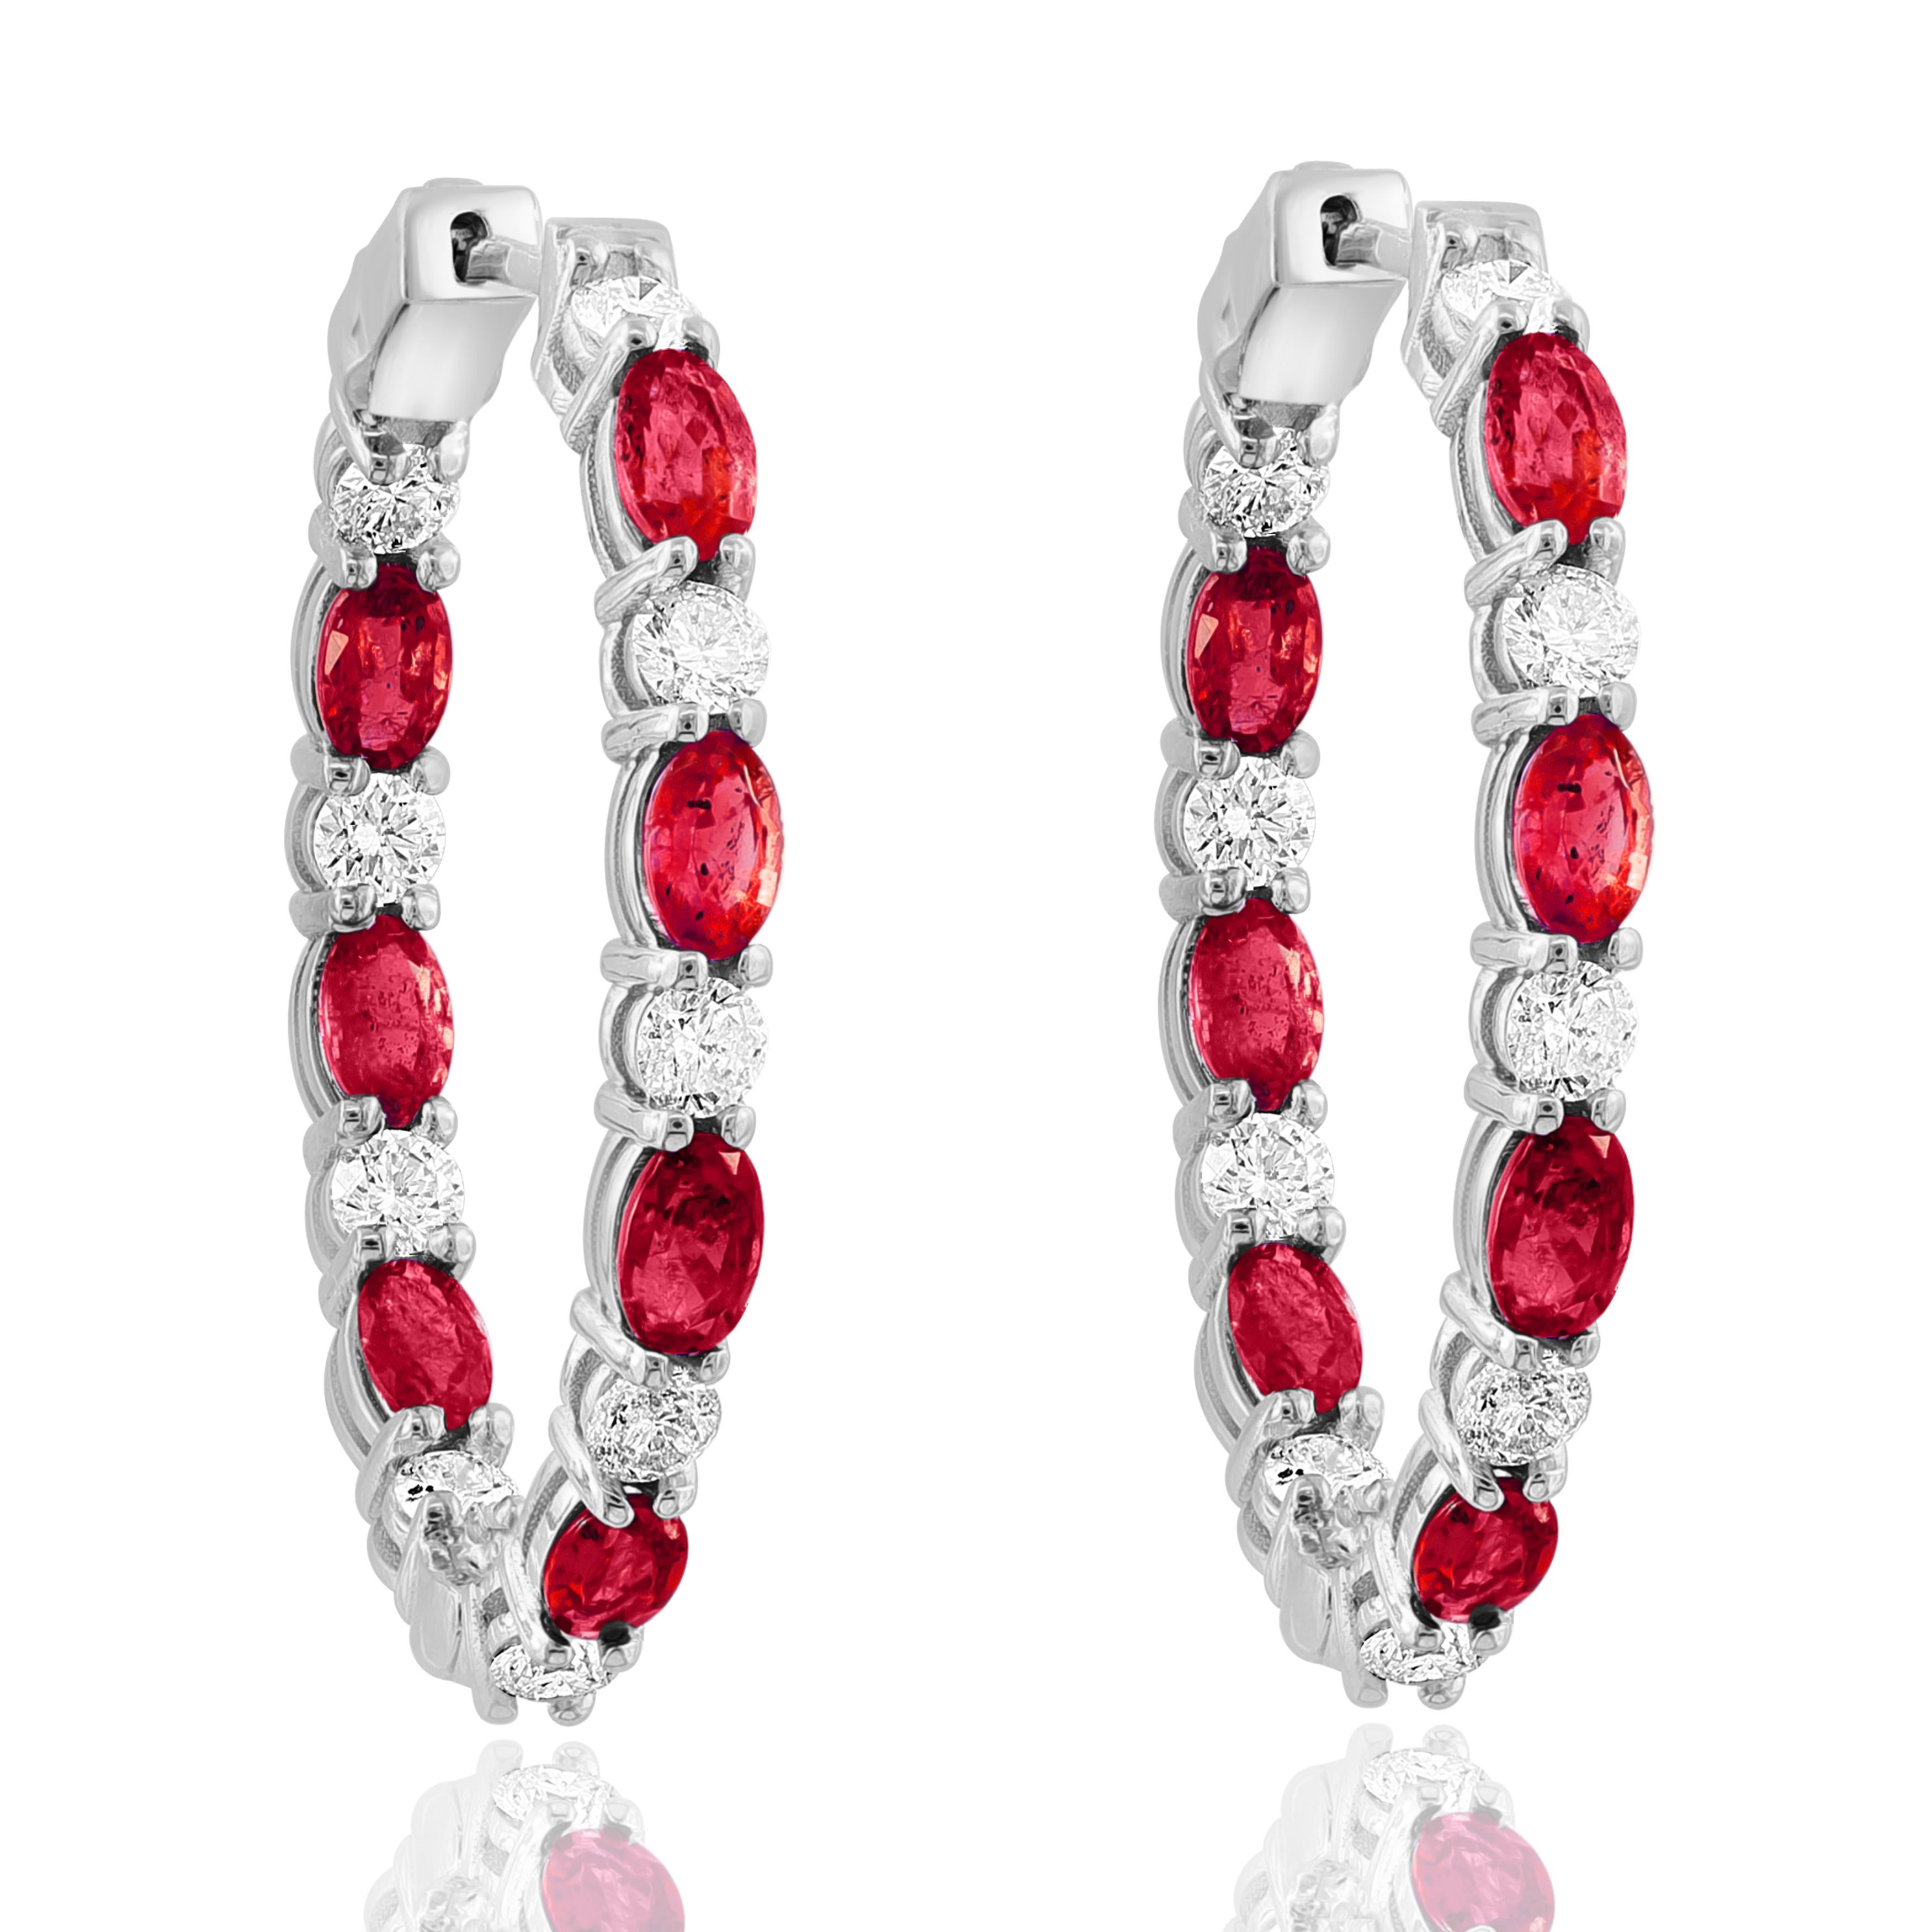 Ein stilvoller und vielseitiger Reif-Ohrring mit 14 roten Rubinen im Ovalschliff mit einem Gesamtgewicht von 4,73 Karat, eingefasst in eine diamantbesetzte Fassung aus 14 Karat Weißgold. 18 Diamanten wiegen insgesamt 1,79 Karat.

Alle Diamanten sind